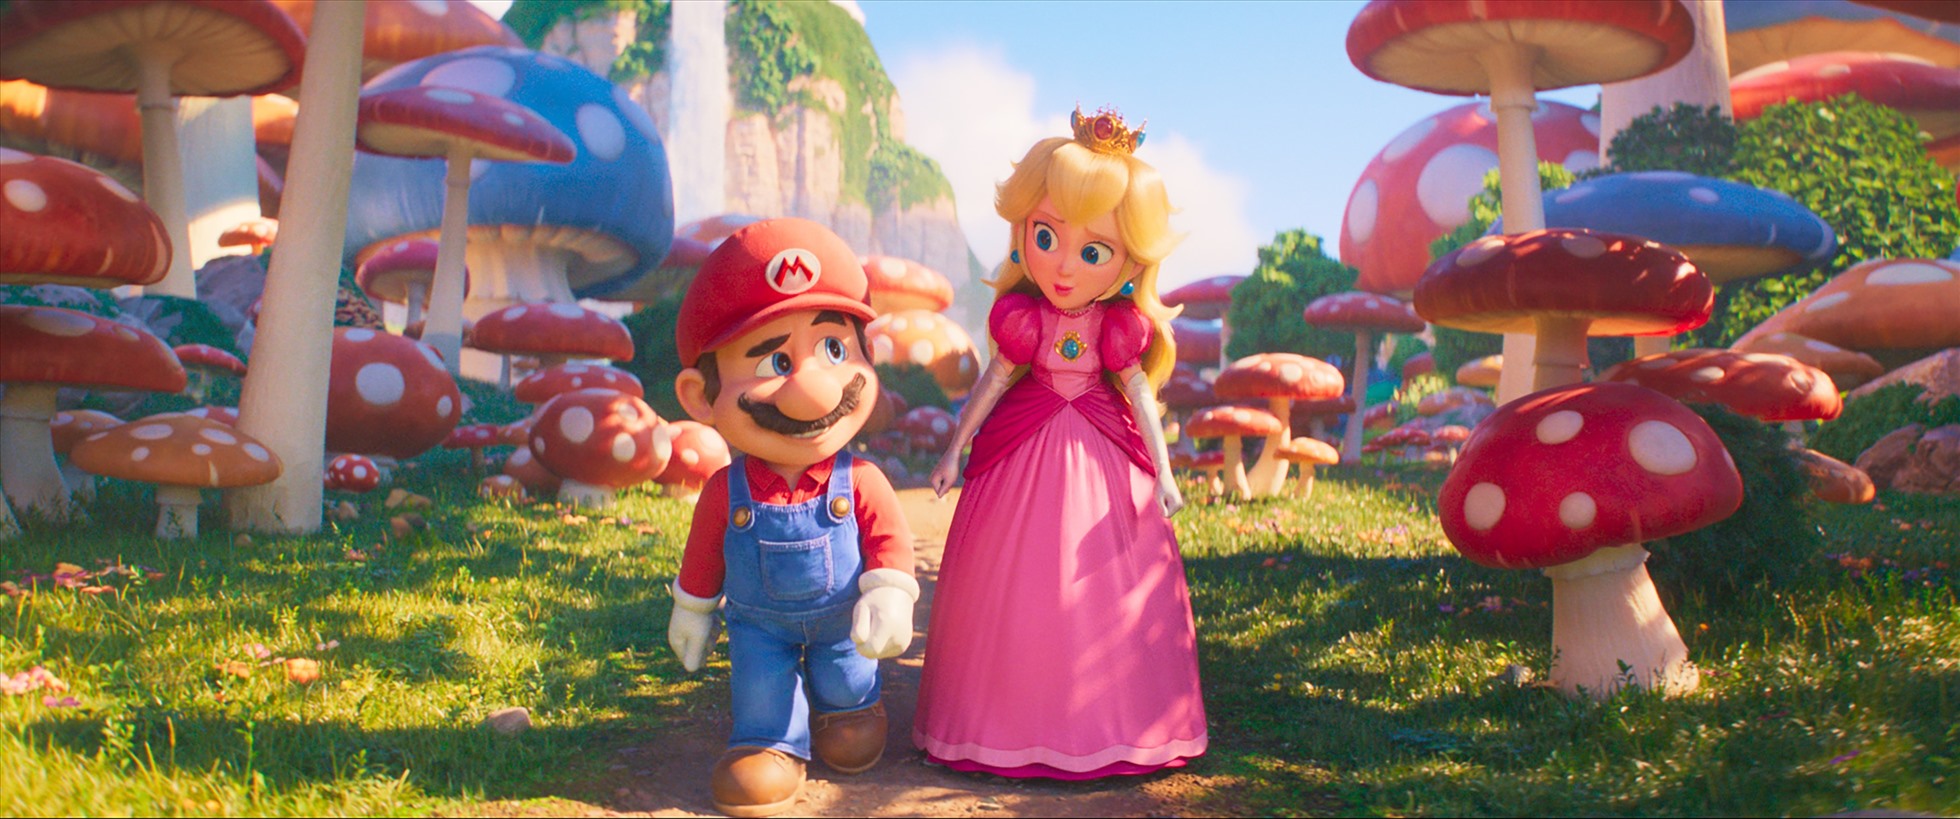 công chúa Peach sẽ đồng hành cùng Mario. Ảnh: Nhà sản xuất